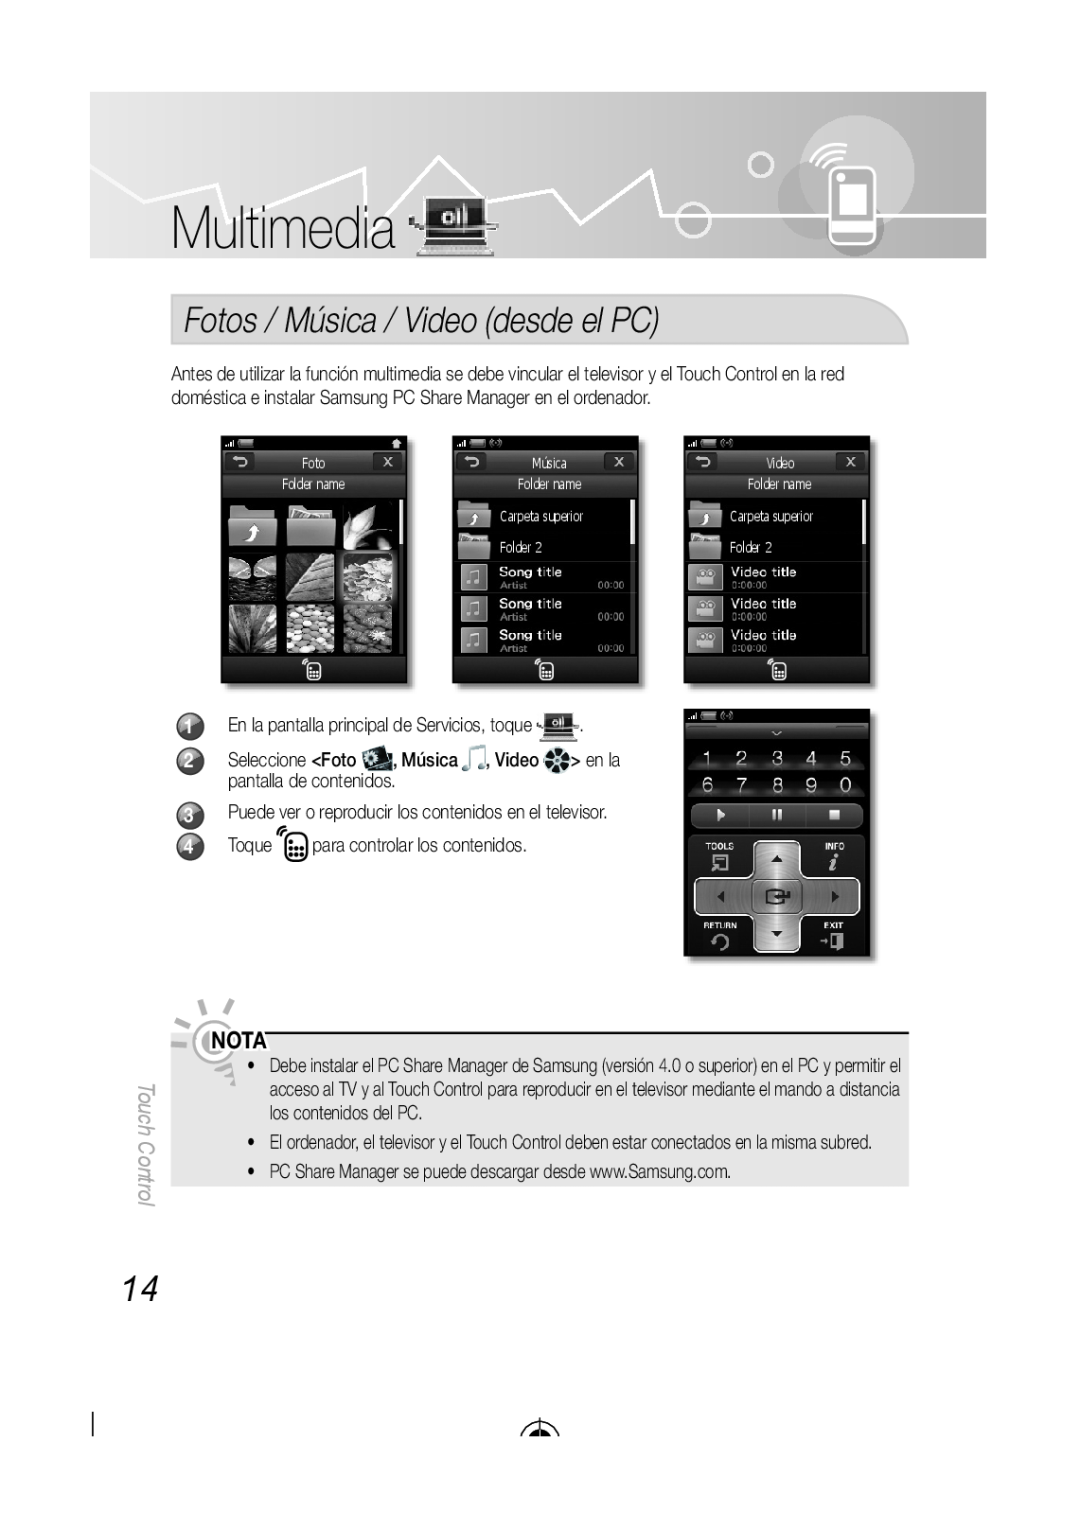 Samsung BN68-03092A-02 Fotos / Música / Video desde el PC, Multimedia, Nota, Touch Control, pantalla de contenidos 